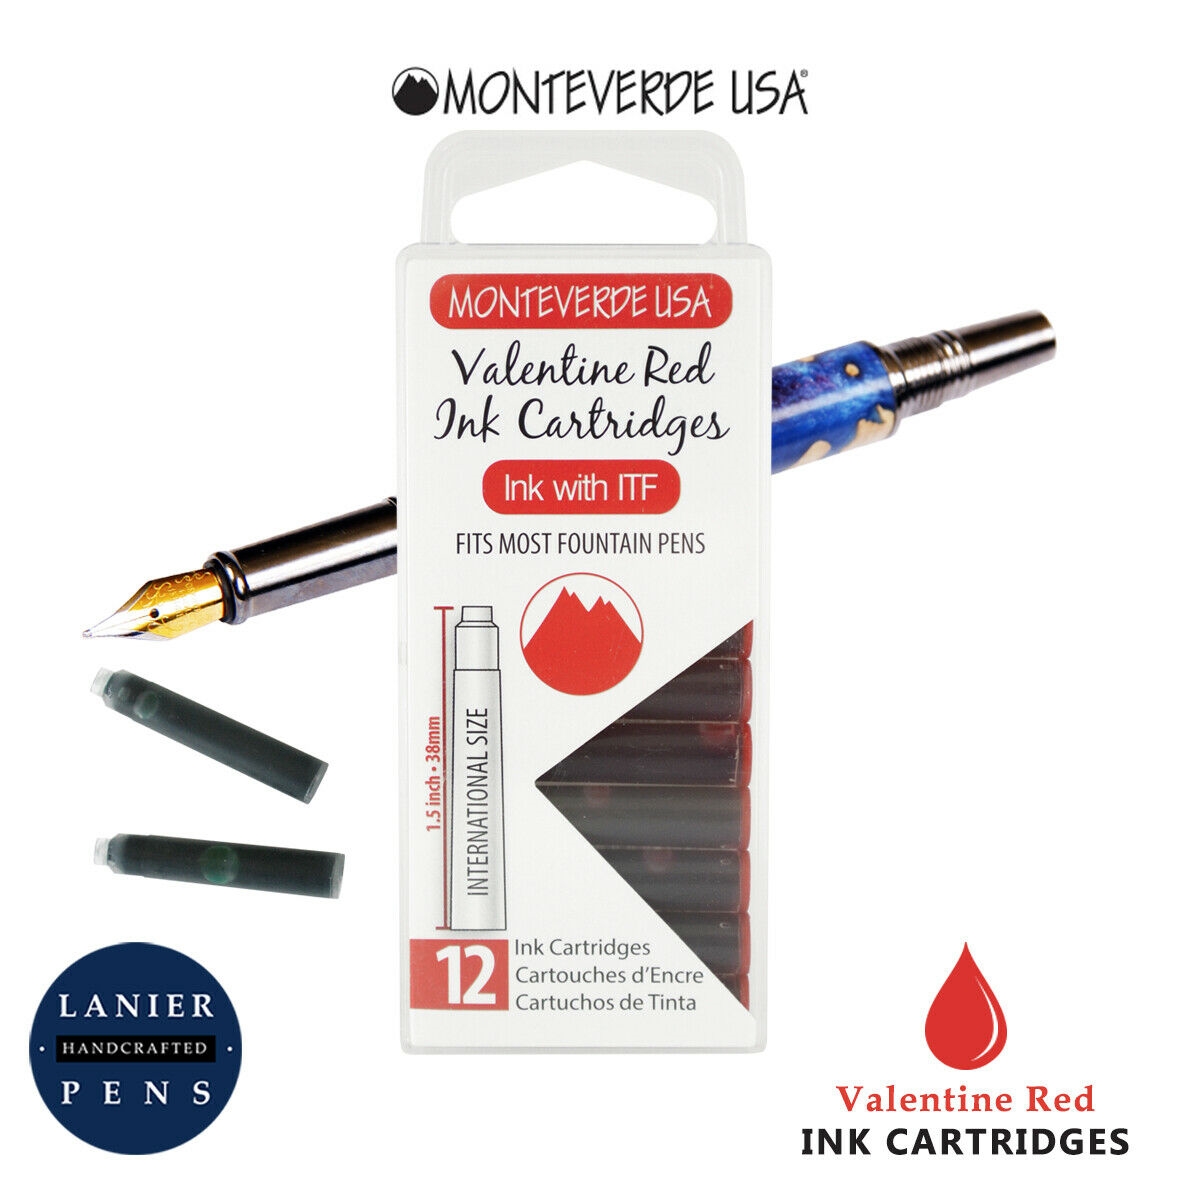 Monteverde G305VR Ink Cartridges Clear Case Gemstone Valentine Red- Pack of 12